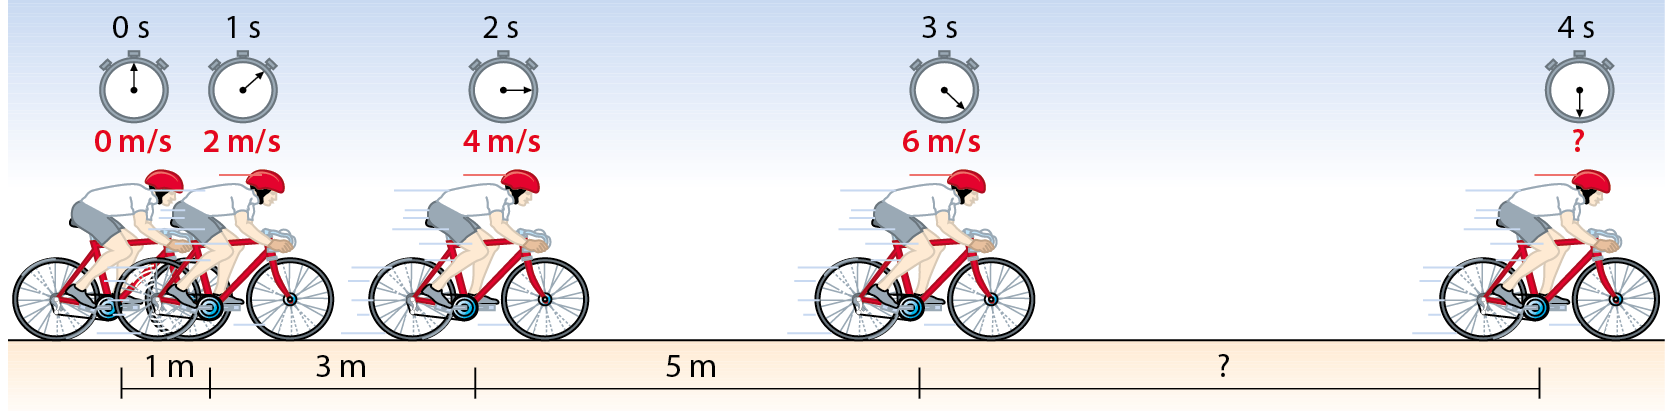 Esquema. Ilustração de um ciclista com capacete vermelho, vestindo camiseta branca e bermuda cinza. Está sobre uma bicicleta vermelha. 0 segundo: 0 metros por segundo. Entre 0 segundo e 1 segundo: 1metro. 1 segundo: 2 metros por segundo. Entre 1 segundo e 2 segundos: 3 metros. 2s: 4 metros por segundo. Entre 2 segundos e 3 segundos: 5 metros. 3 segundos: 6 metros por segundo. Entre 3 segundos e 4 segundos: ?. 4 segundos: ?.